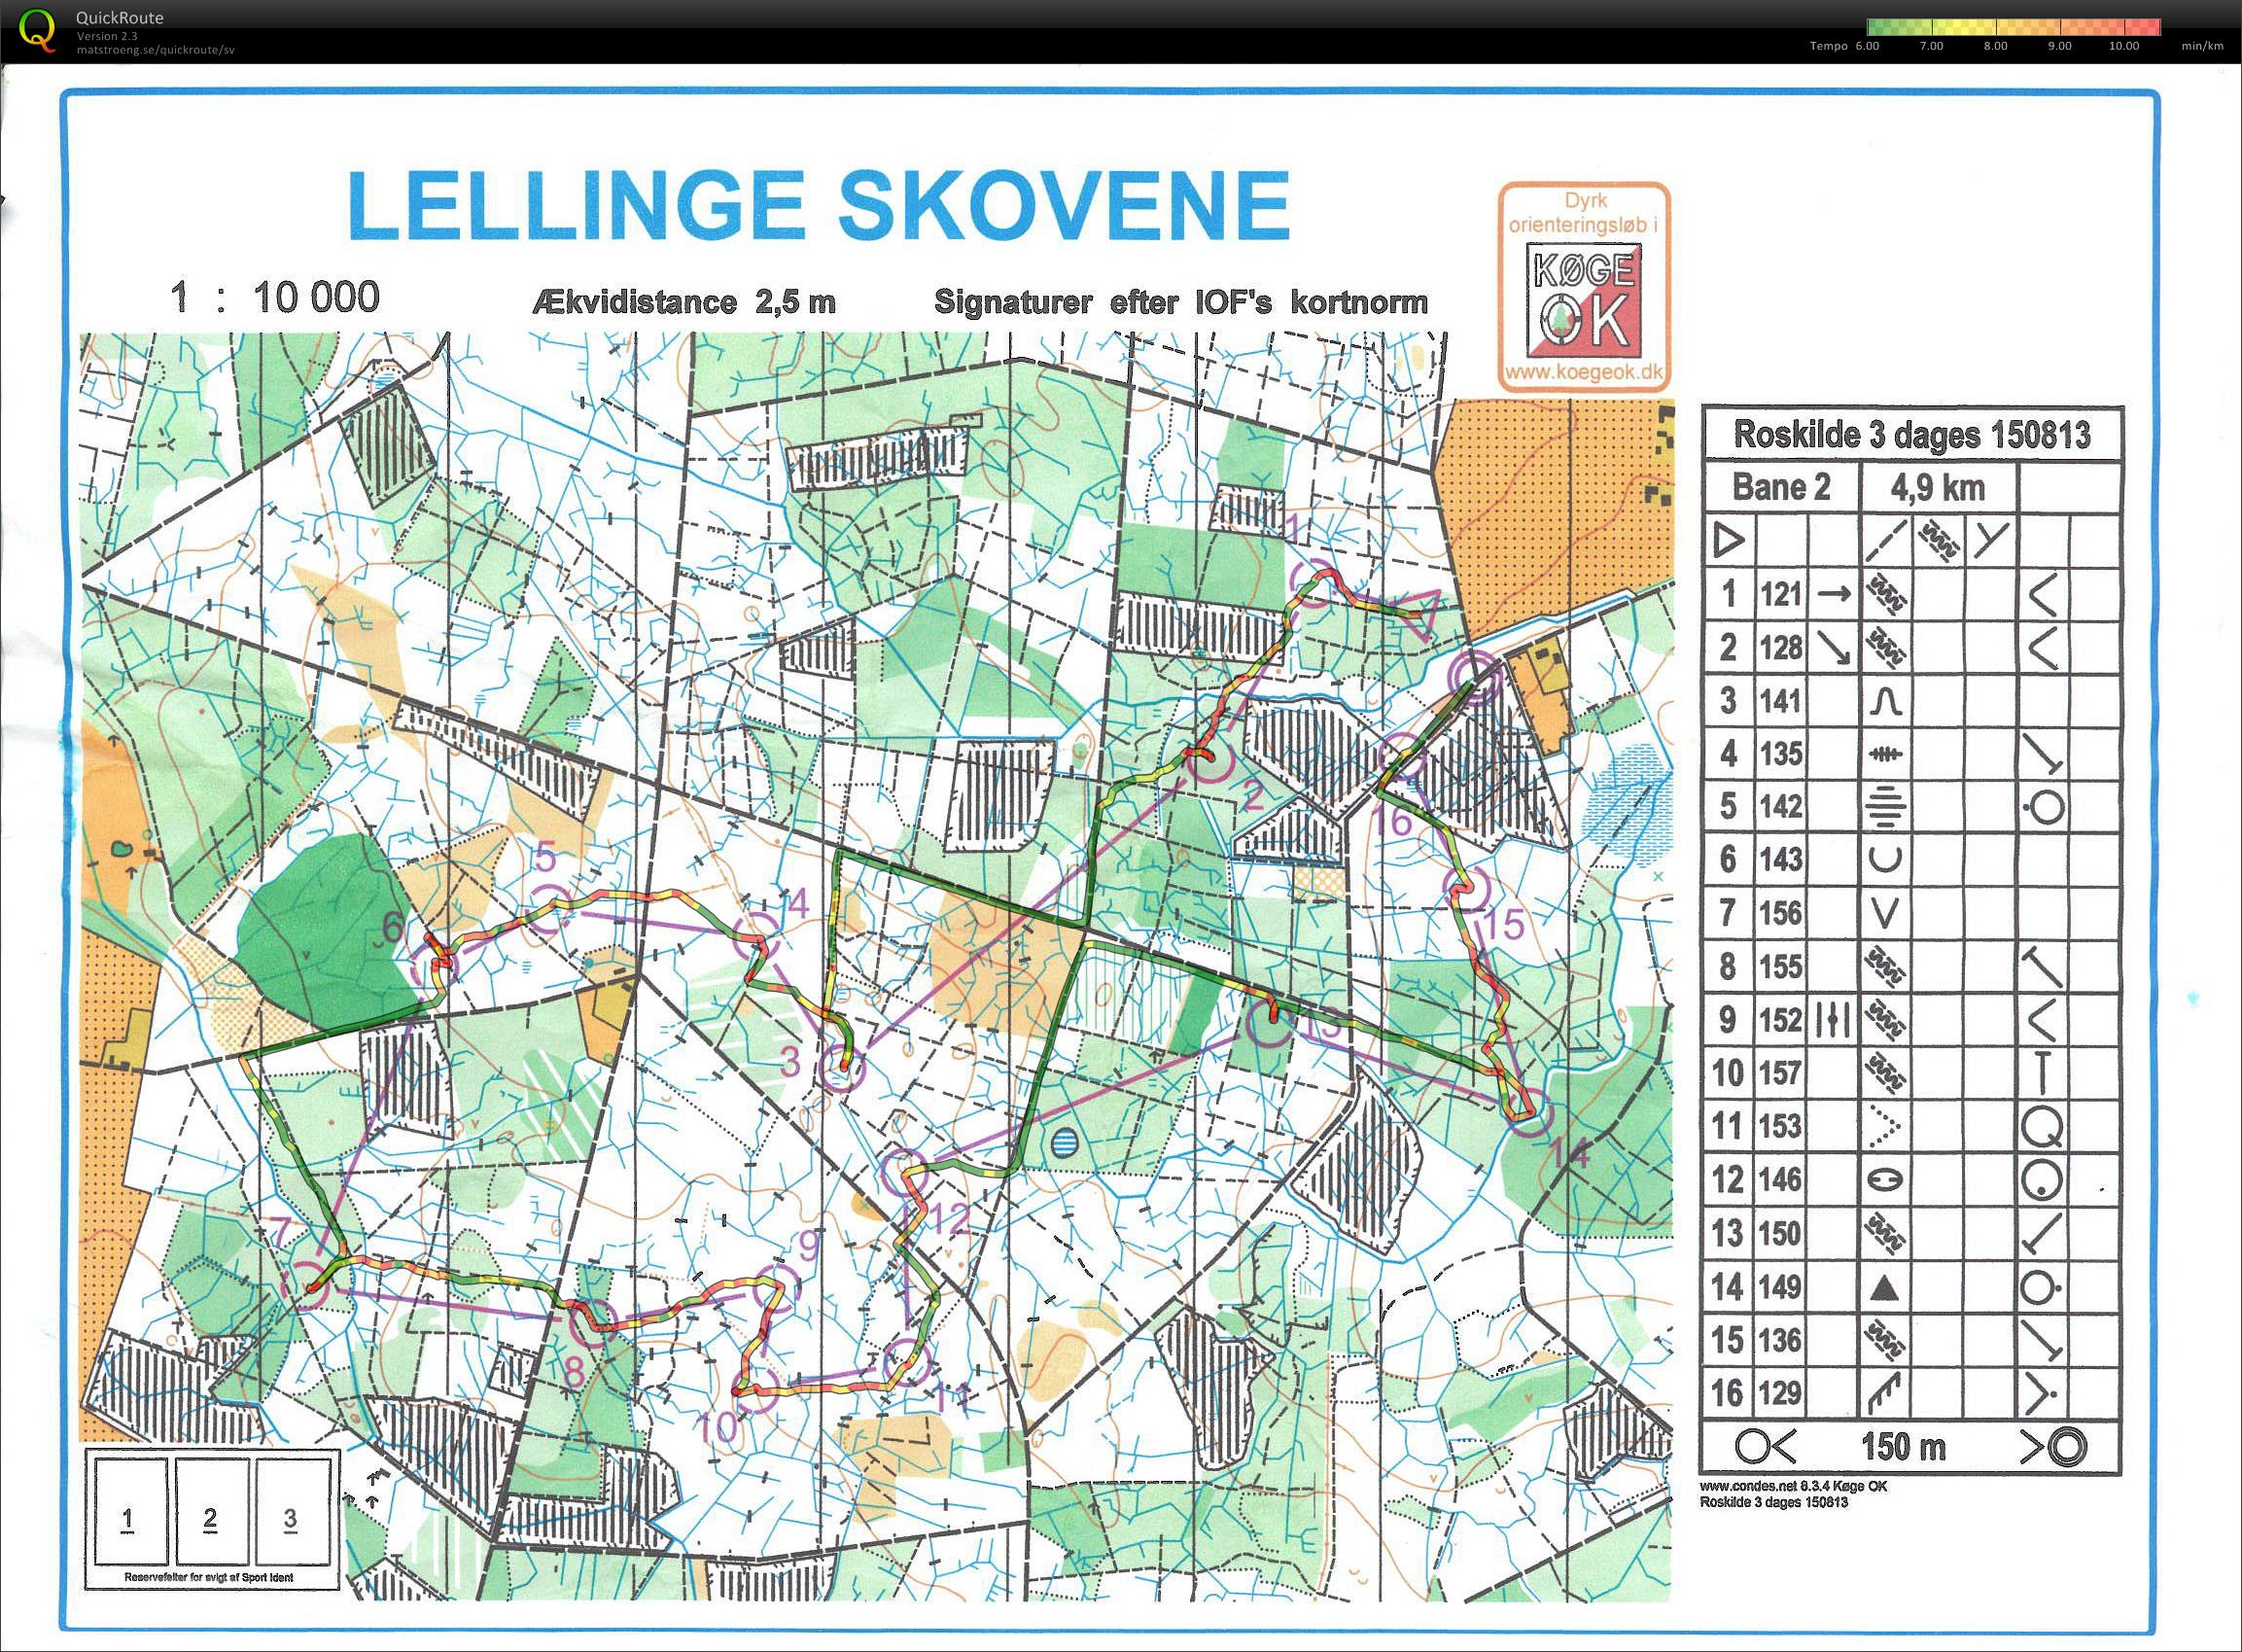 Roskilde 3-dages, 1. etape (2013-08-15)